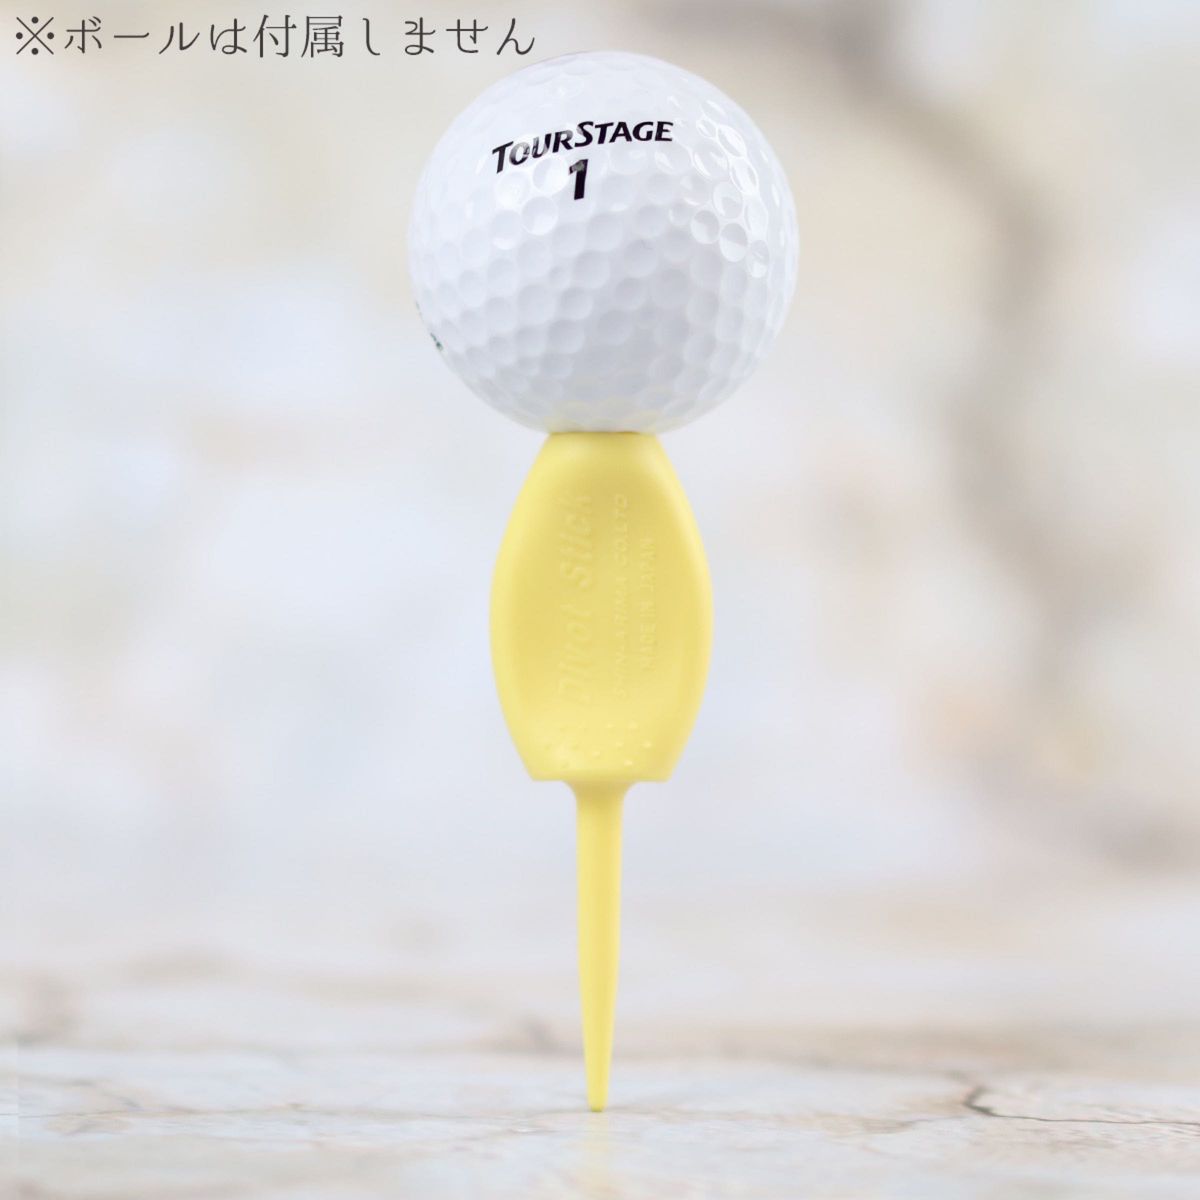 8本セット 日本製 パリティー 通常色 イエロー 黄色 ゴルフボール 跡 ゴルフティー ティーペグ グリーンフォーク b098Ty